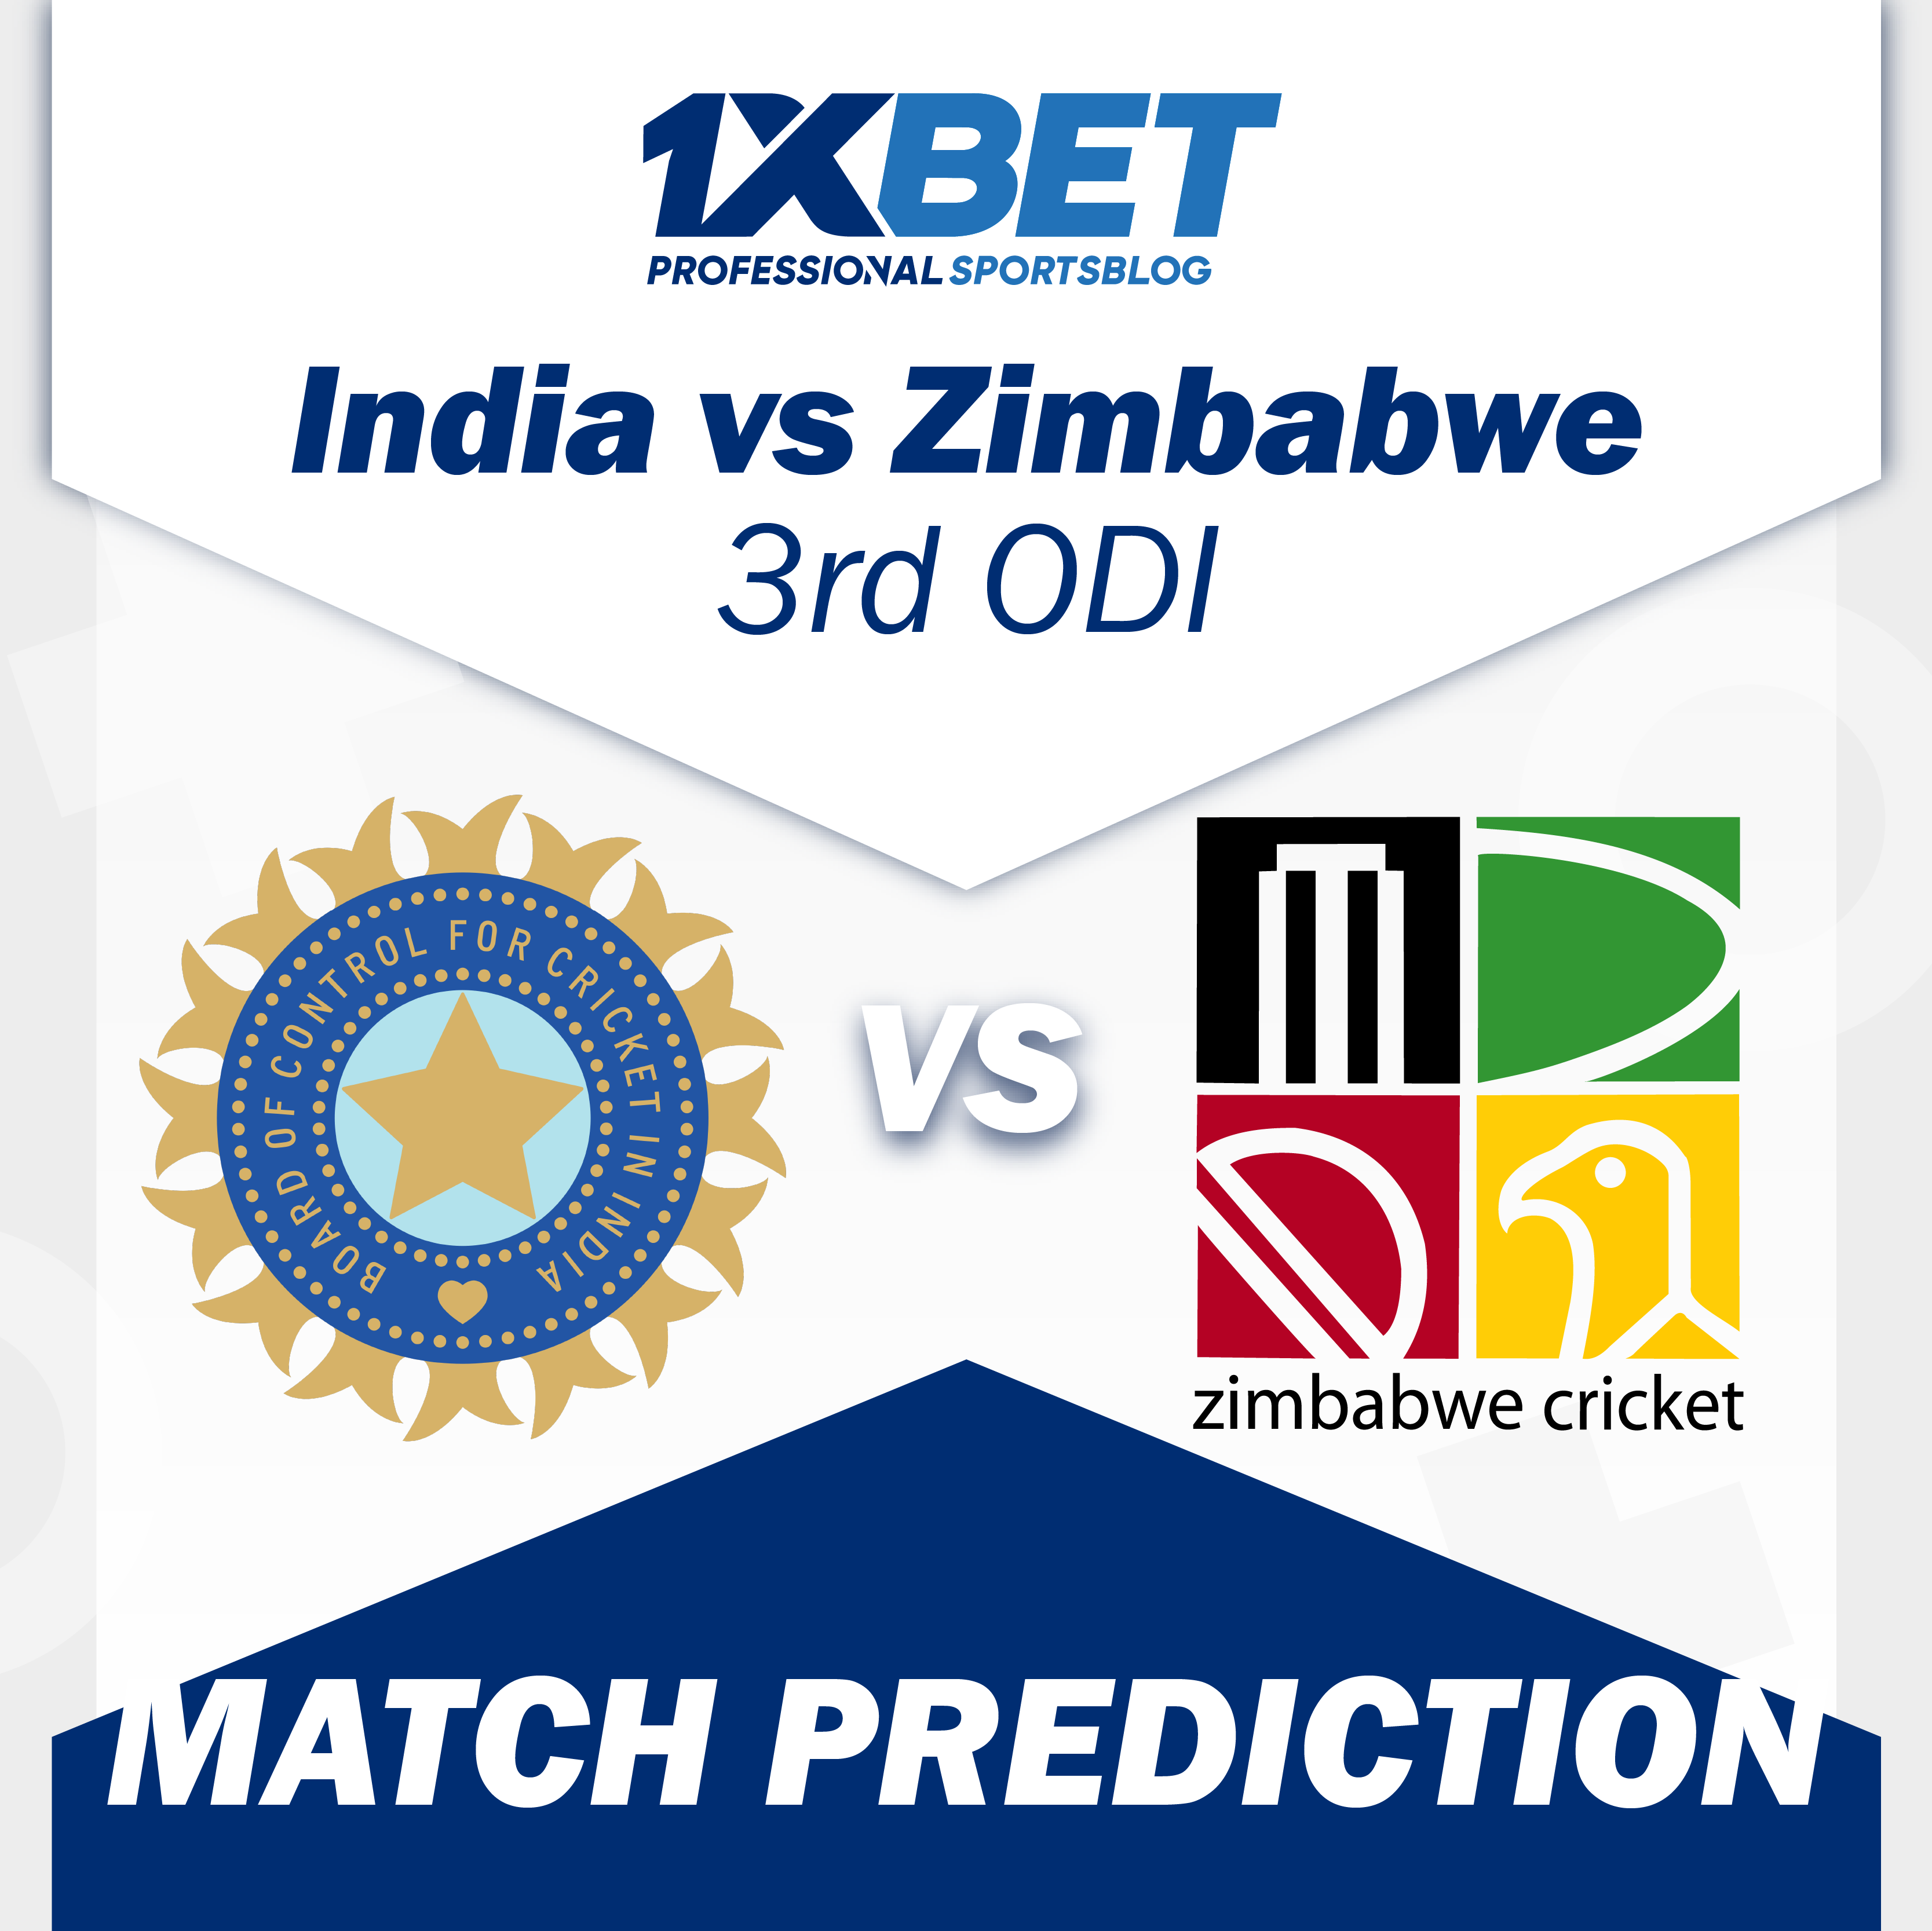 India vs Zimbabwe, 3rd ODI Match Prediction